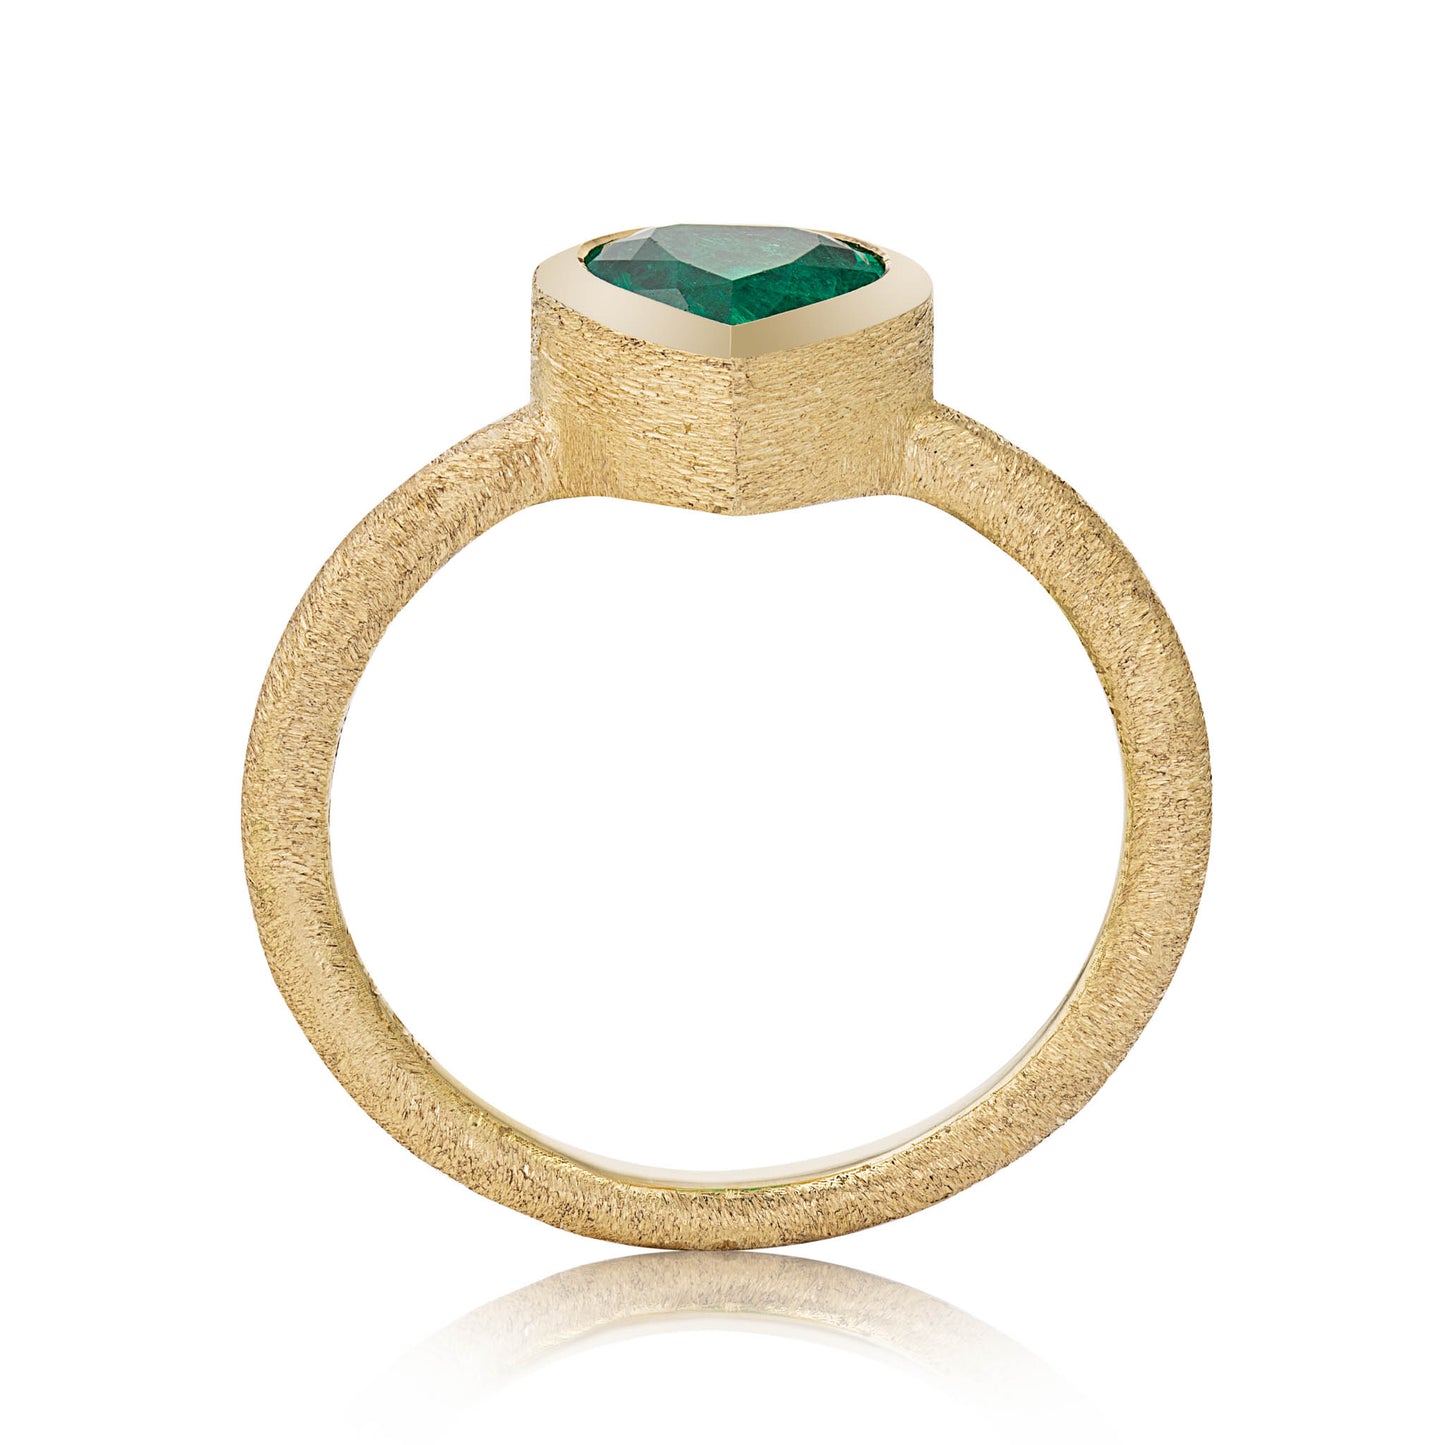 Tear Cut Emerald Ring